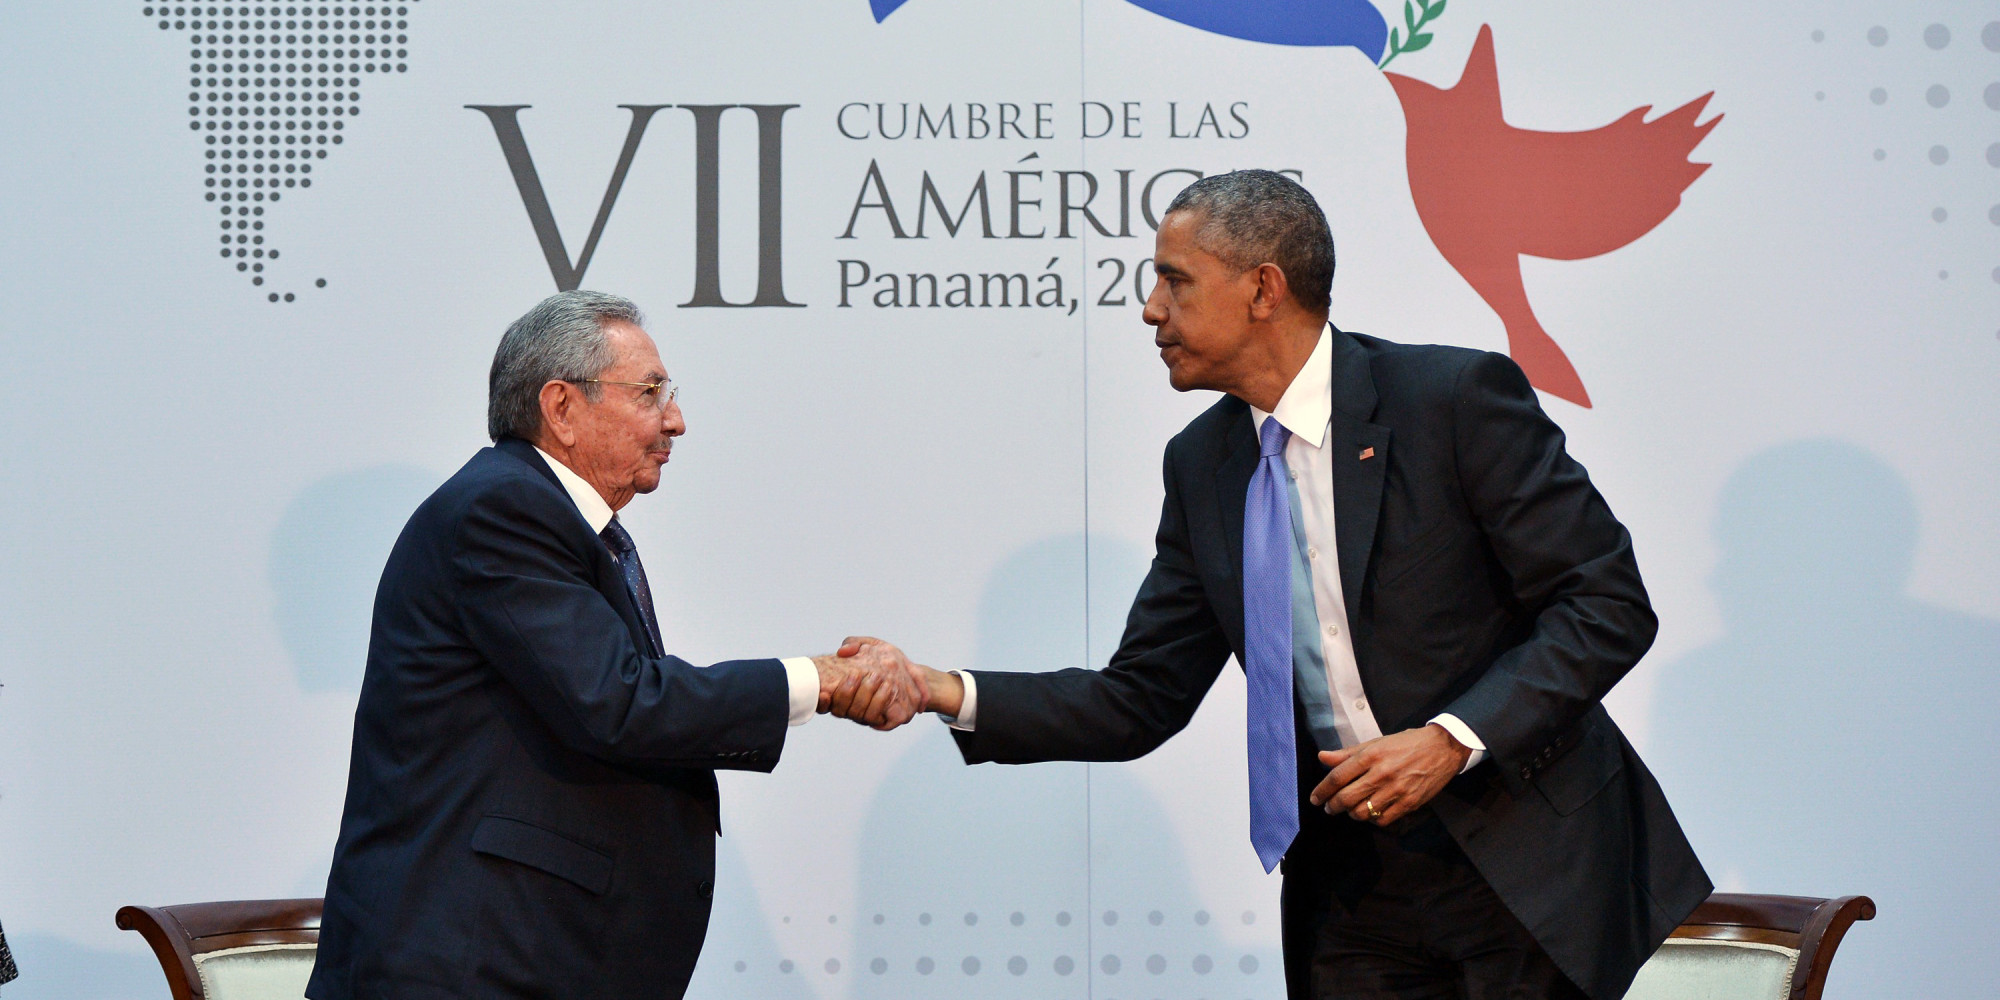 Esta imagen le dio la vuelta al mundo, el encuentro del presidente de Estados Unidos (EE.UU.) , Barack Obama, y su homólogo Cubano, Raúl Castro el pasado 11 de abril  en Panamá, en el marco de la VII .Cumbre de las Américas.